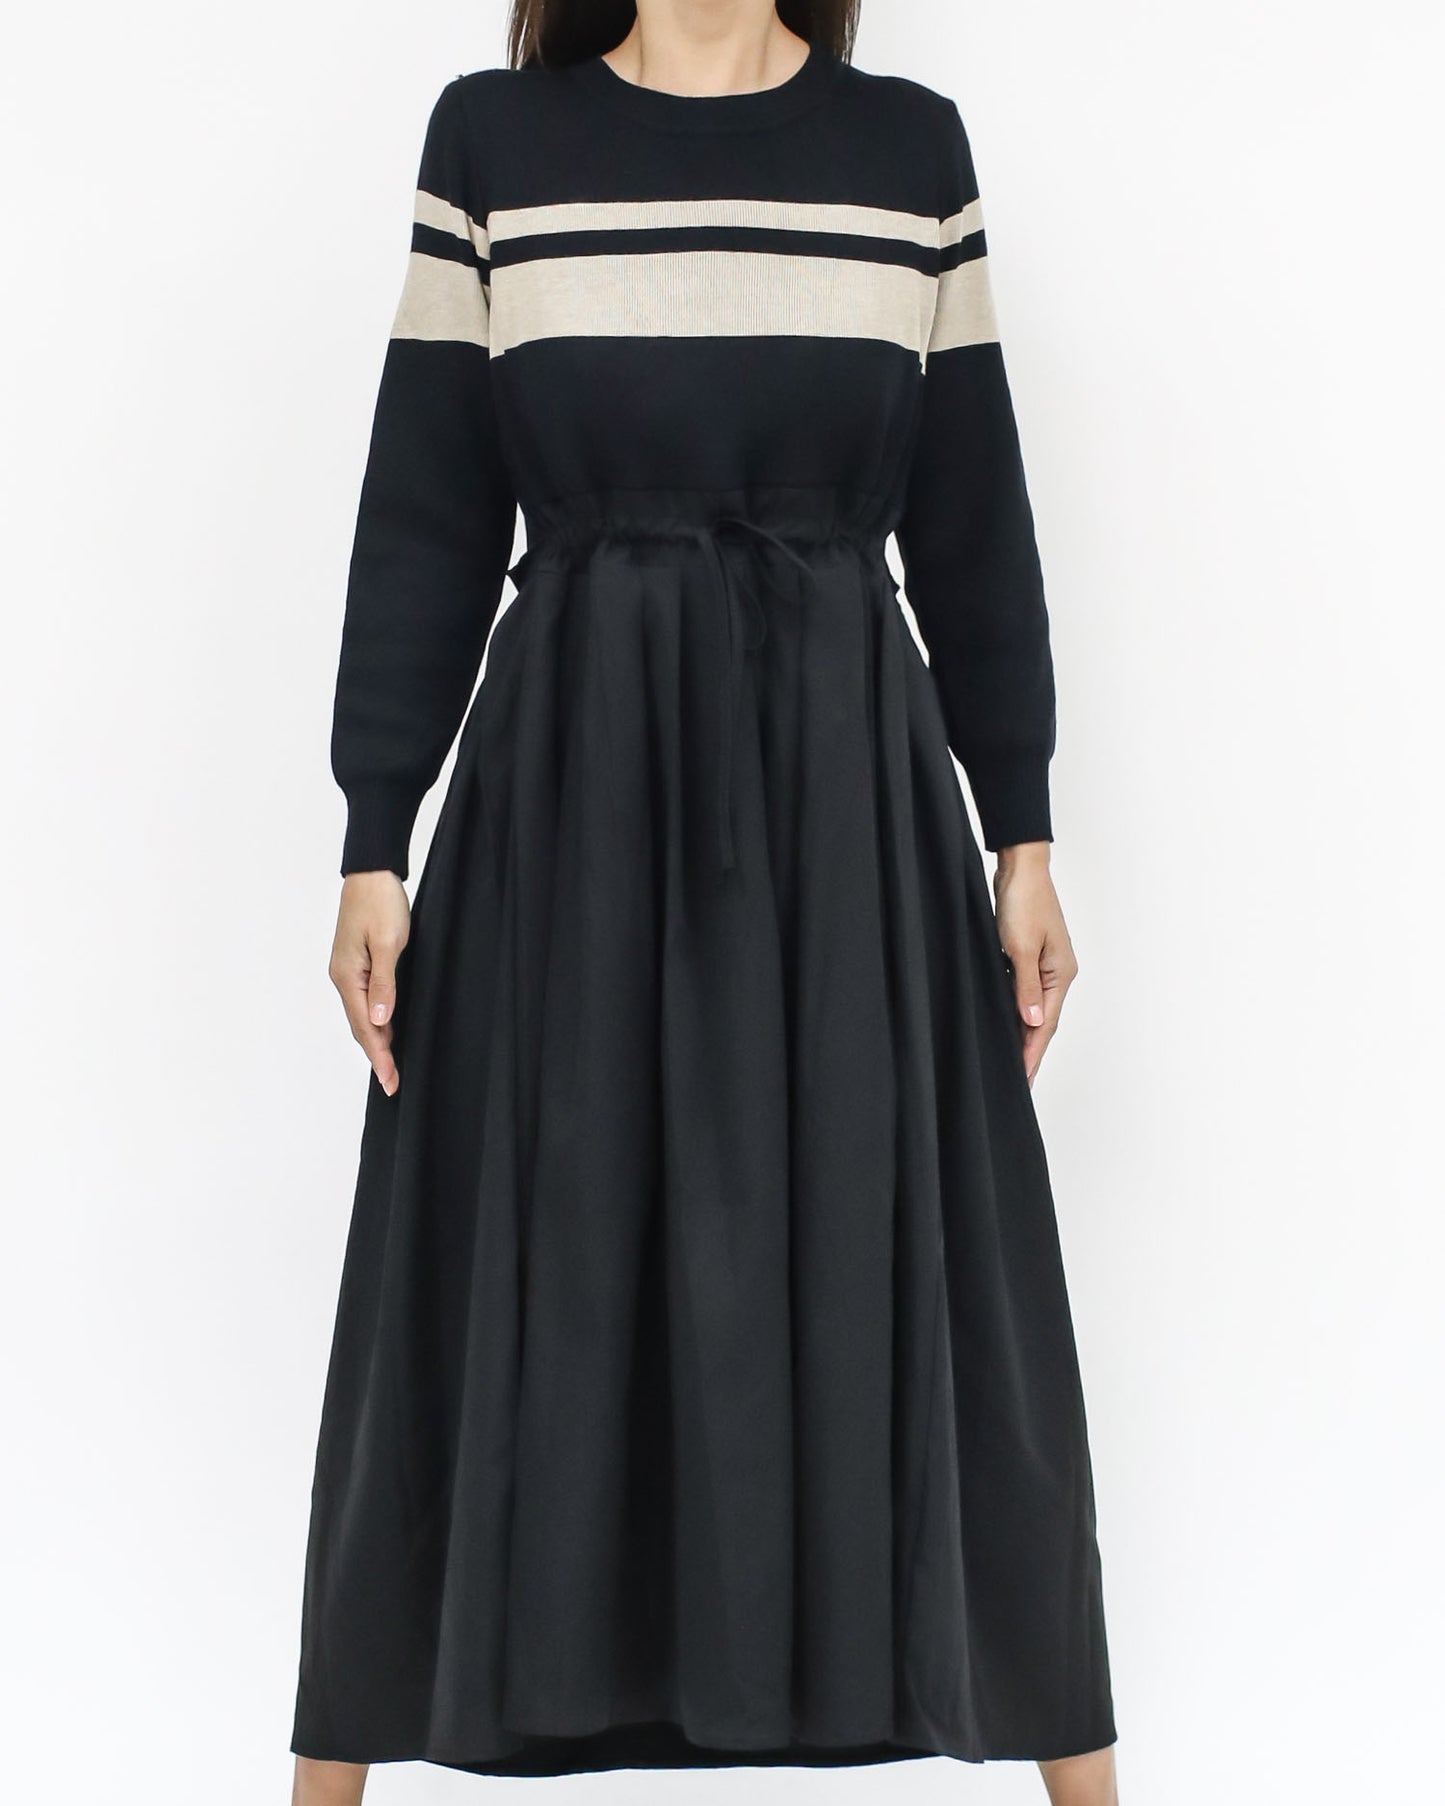 黑色和象牙色條紋針織襯衫喇叭連身裙